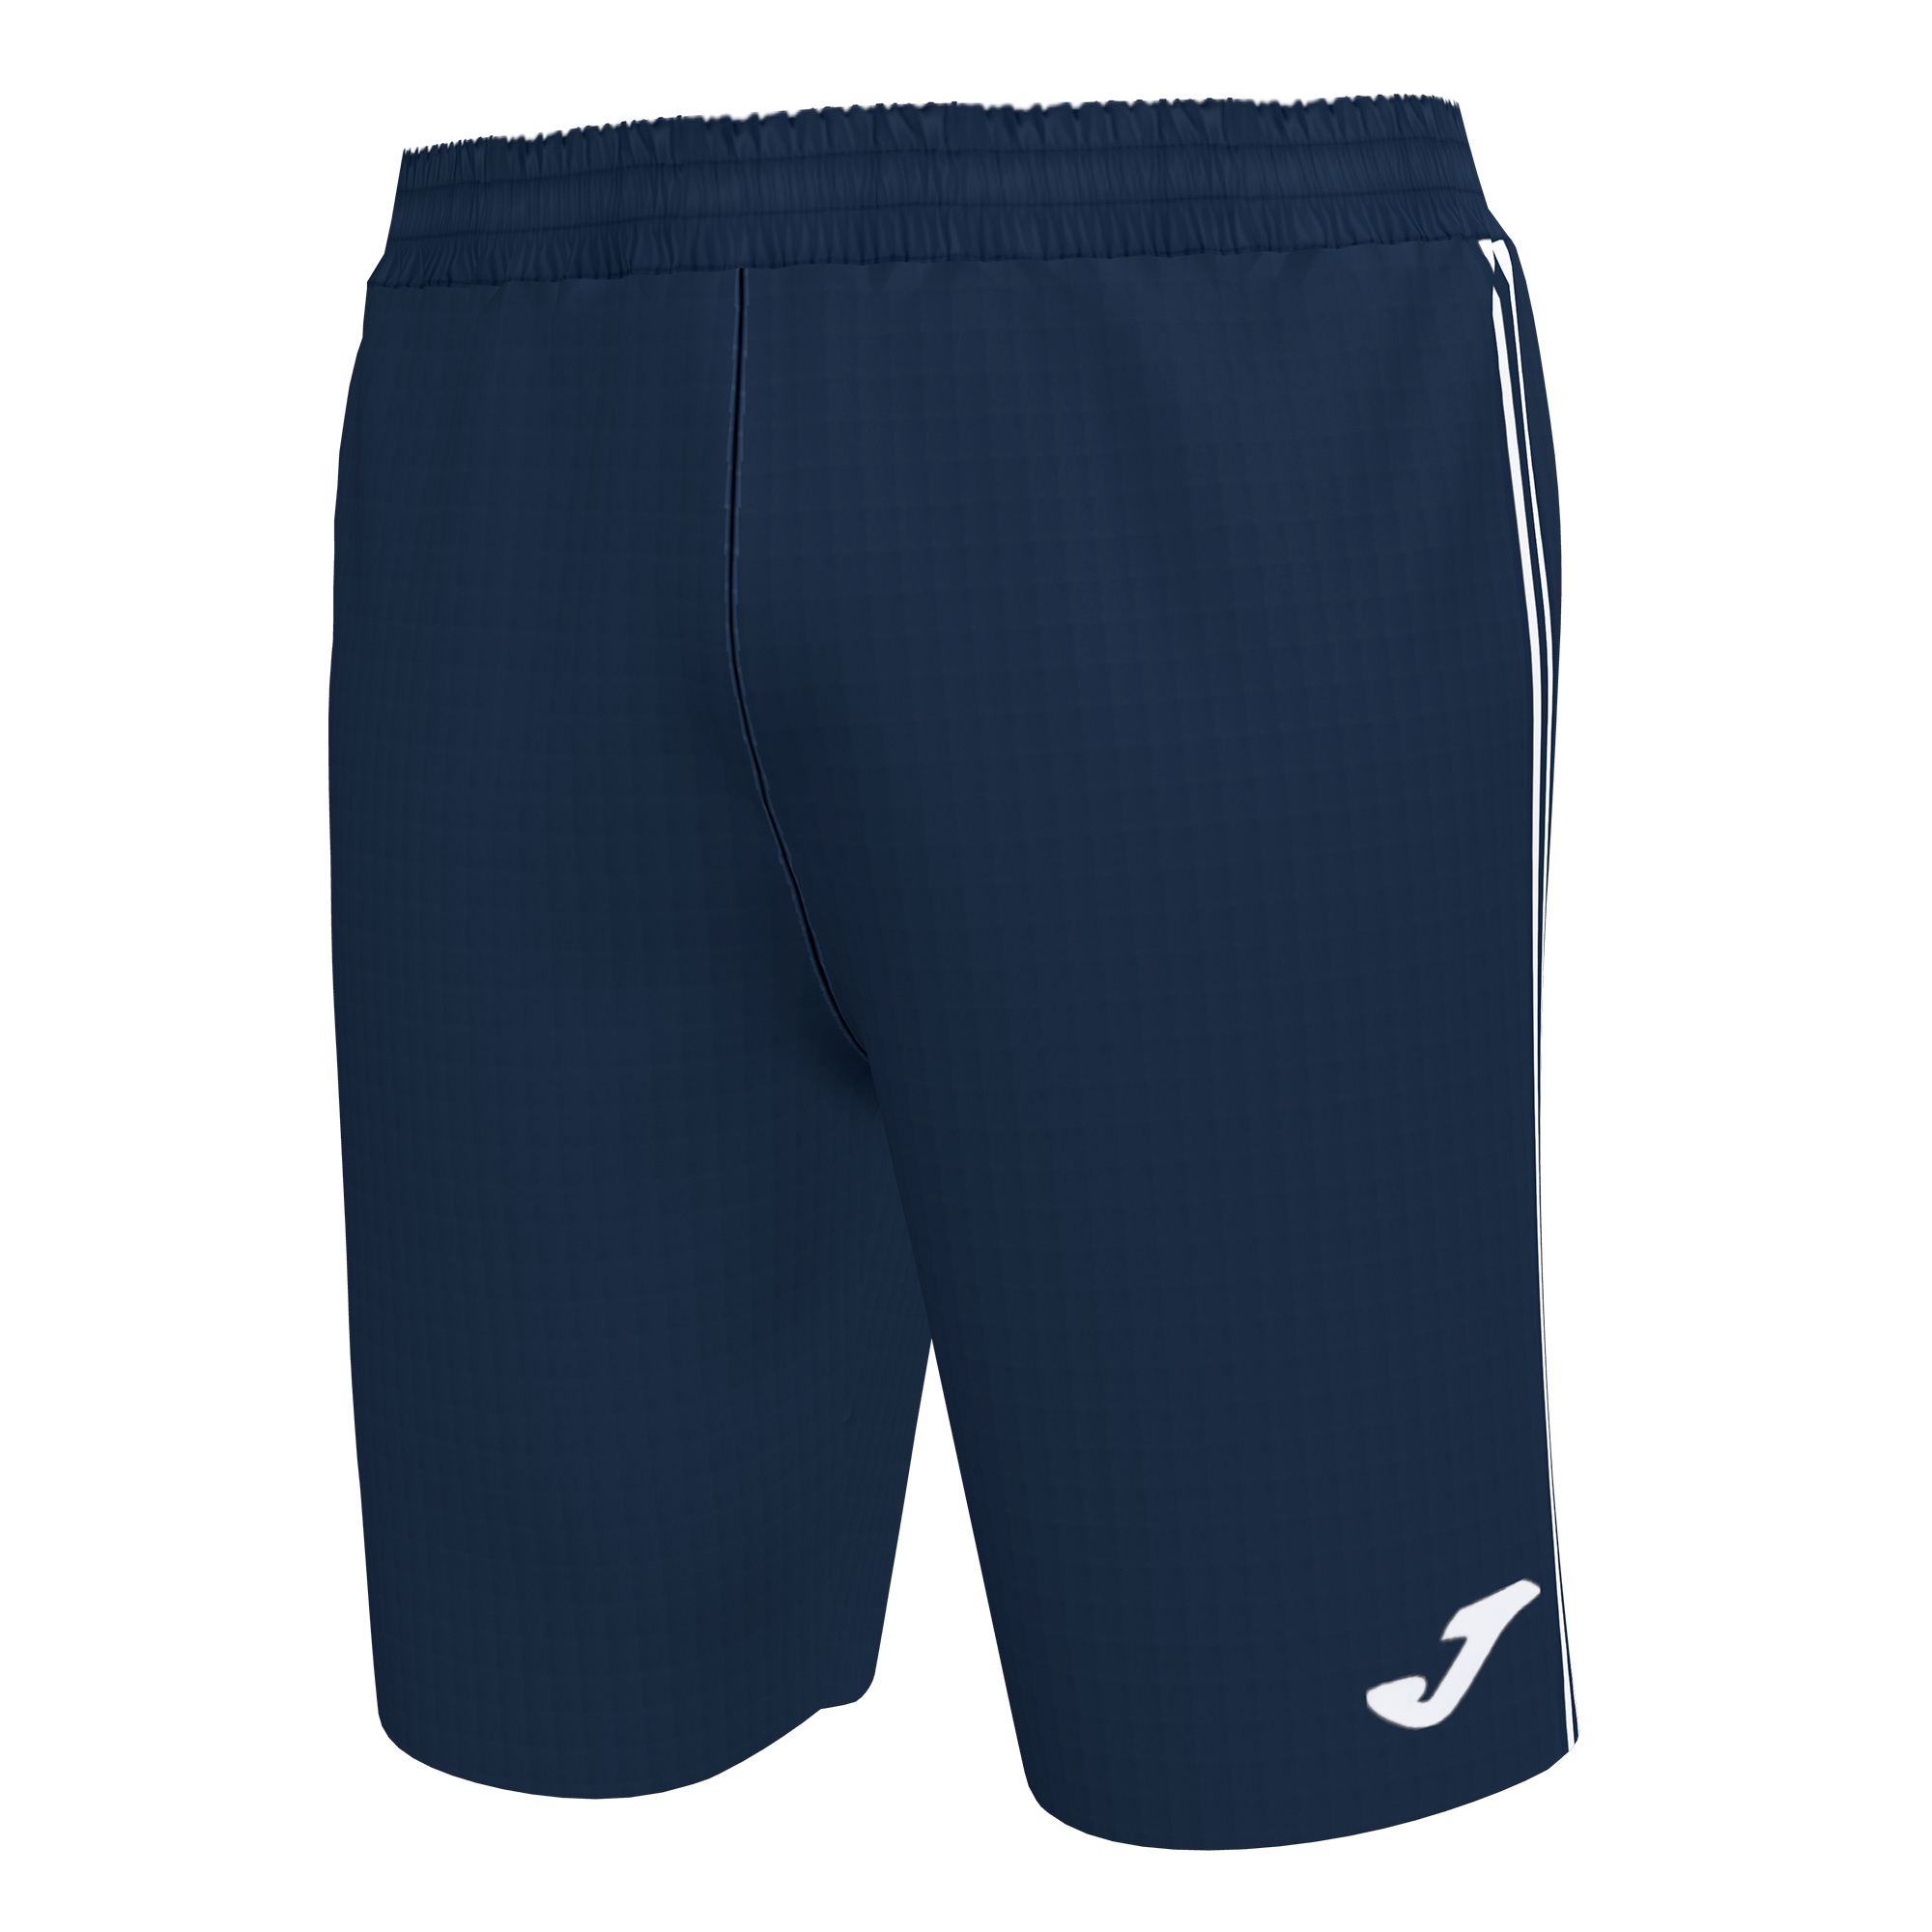 Волейбольные шорты мужские Joma CLASSIC BERMUDA Темно-синий/Белый